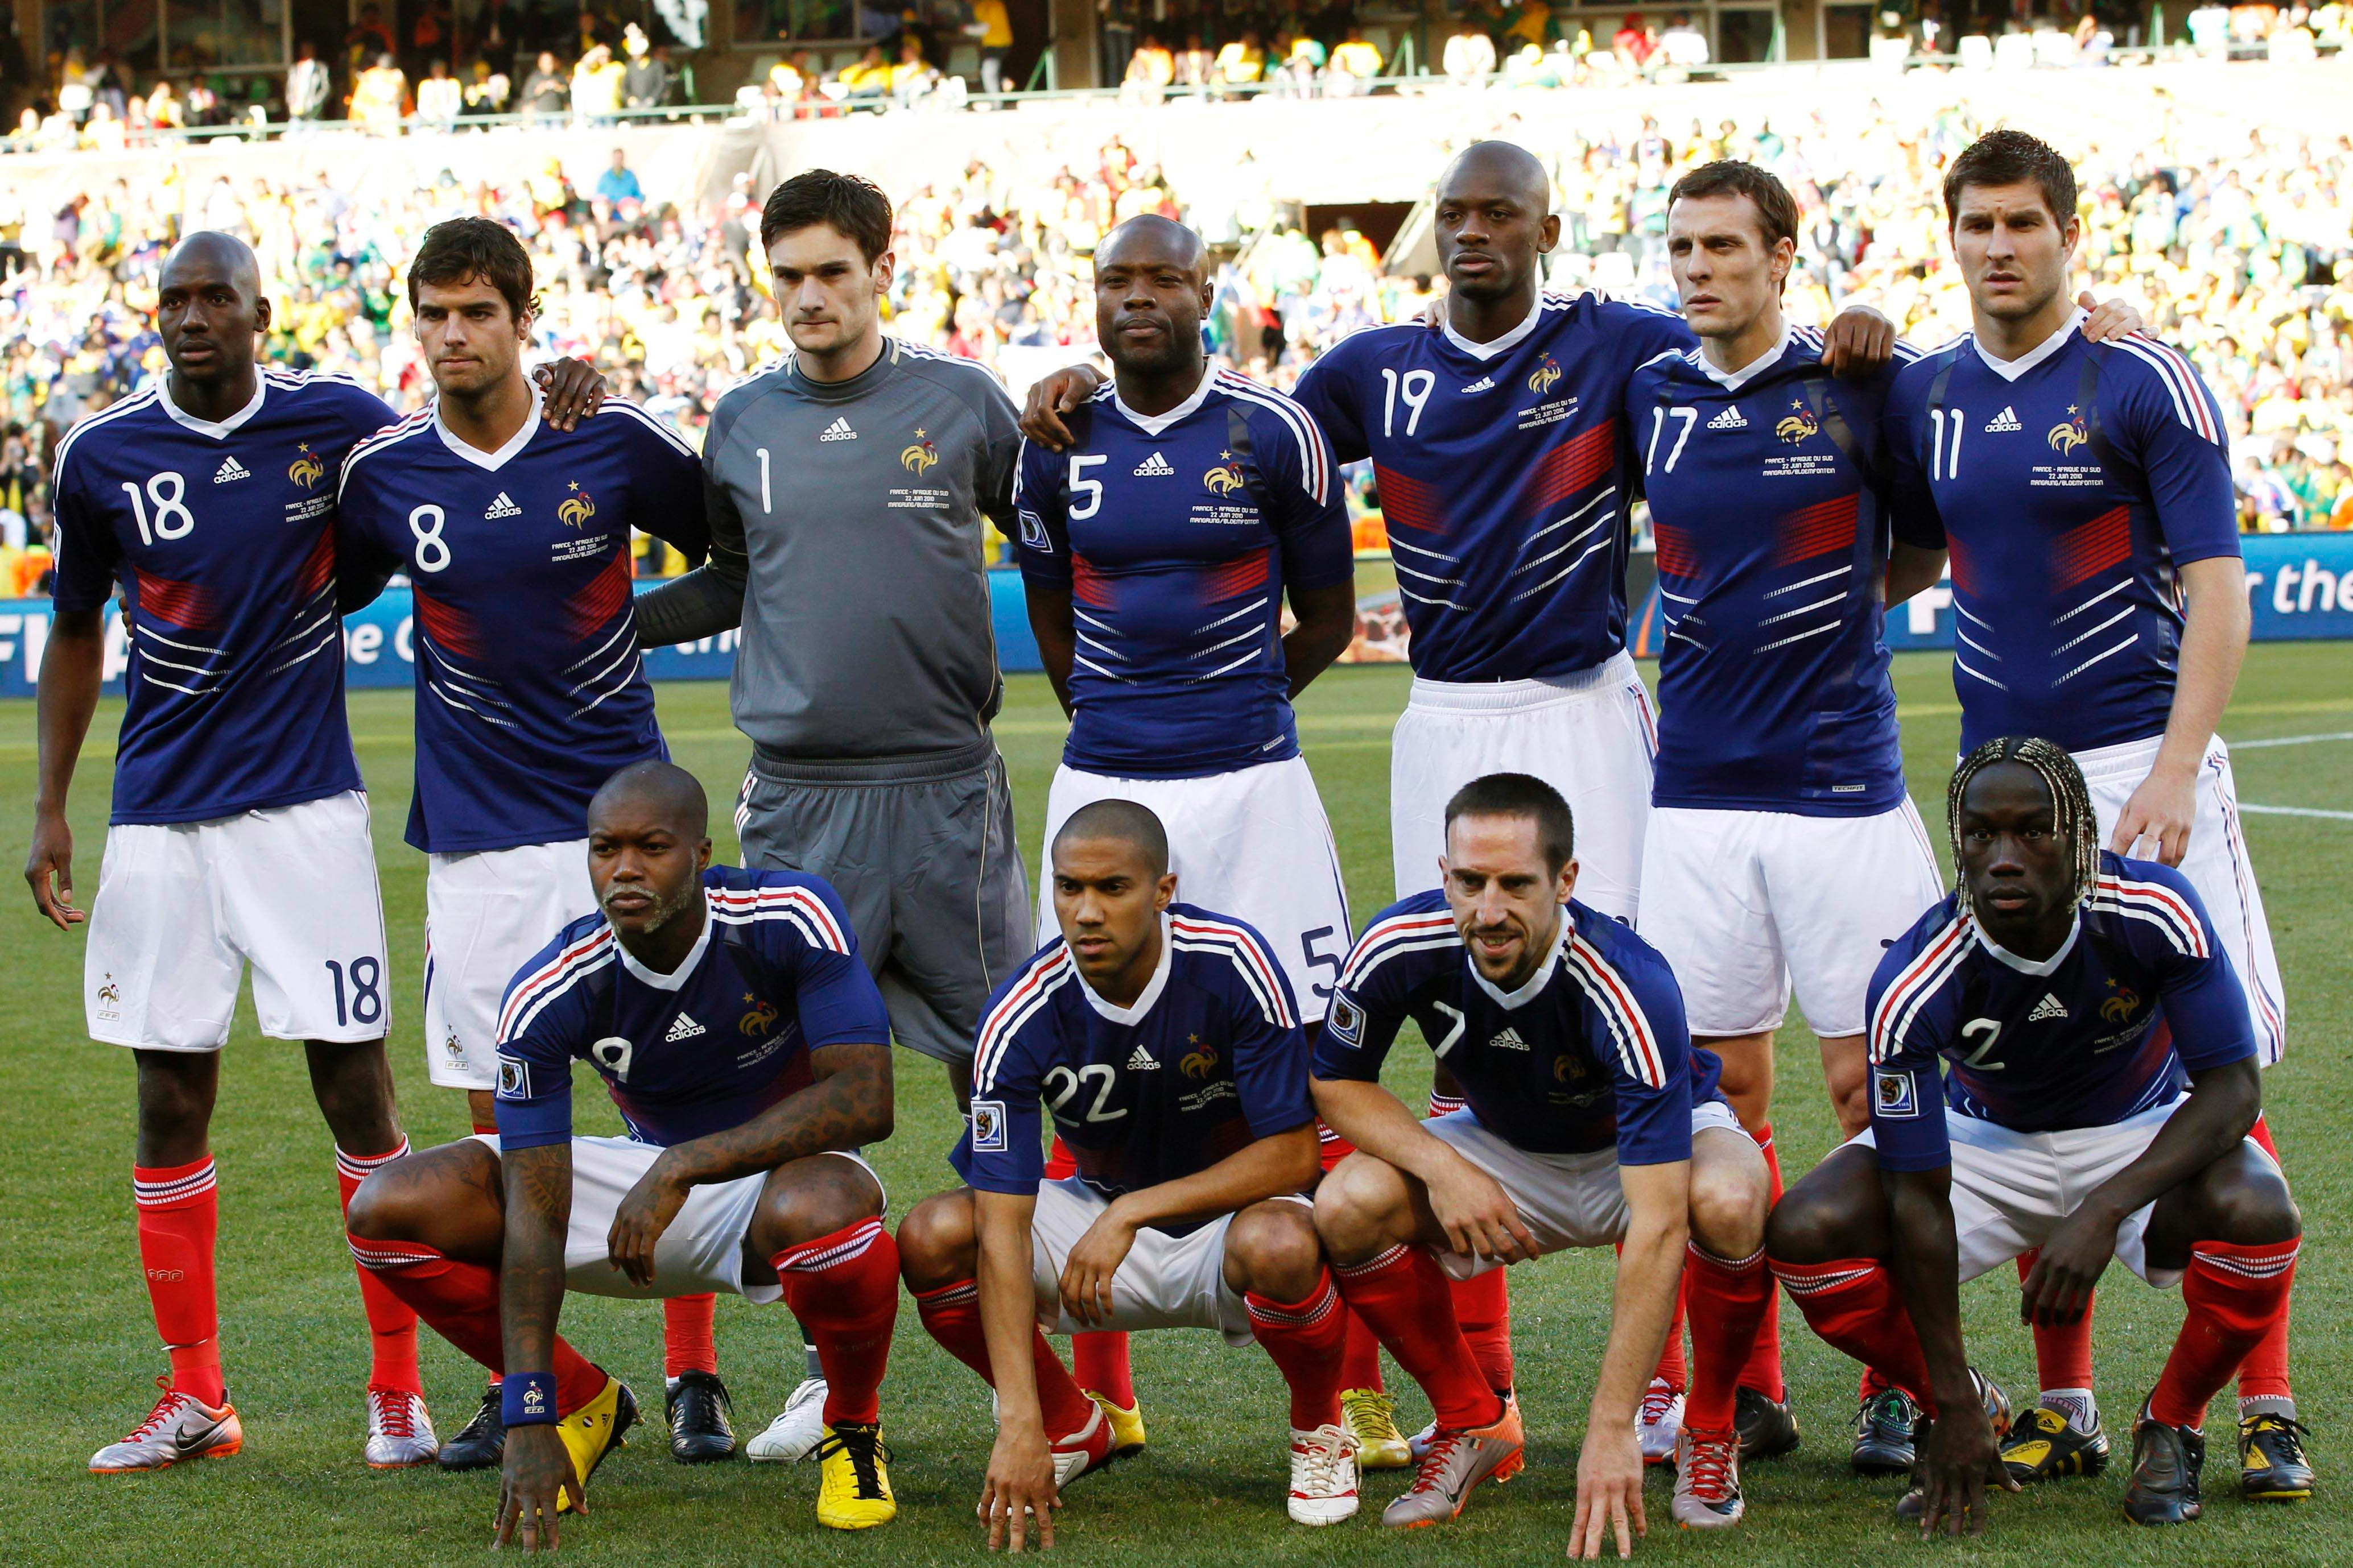 Det franska landslaget vid VM 2010. Nu planerar förbundet att stämma tidningen som publicerade uppgifterna om de rasistiska kvoteringarna.